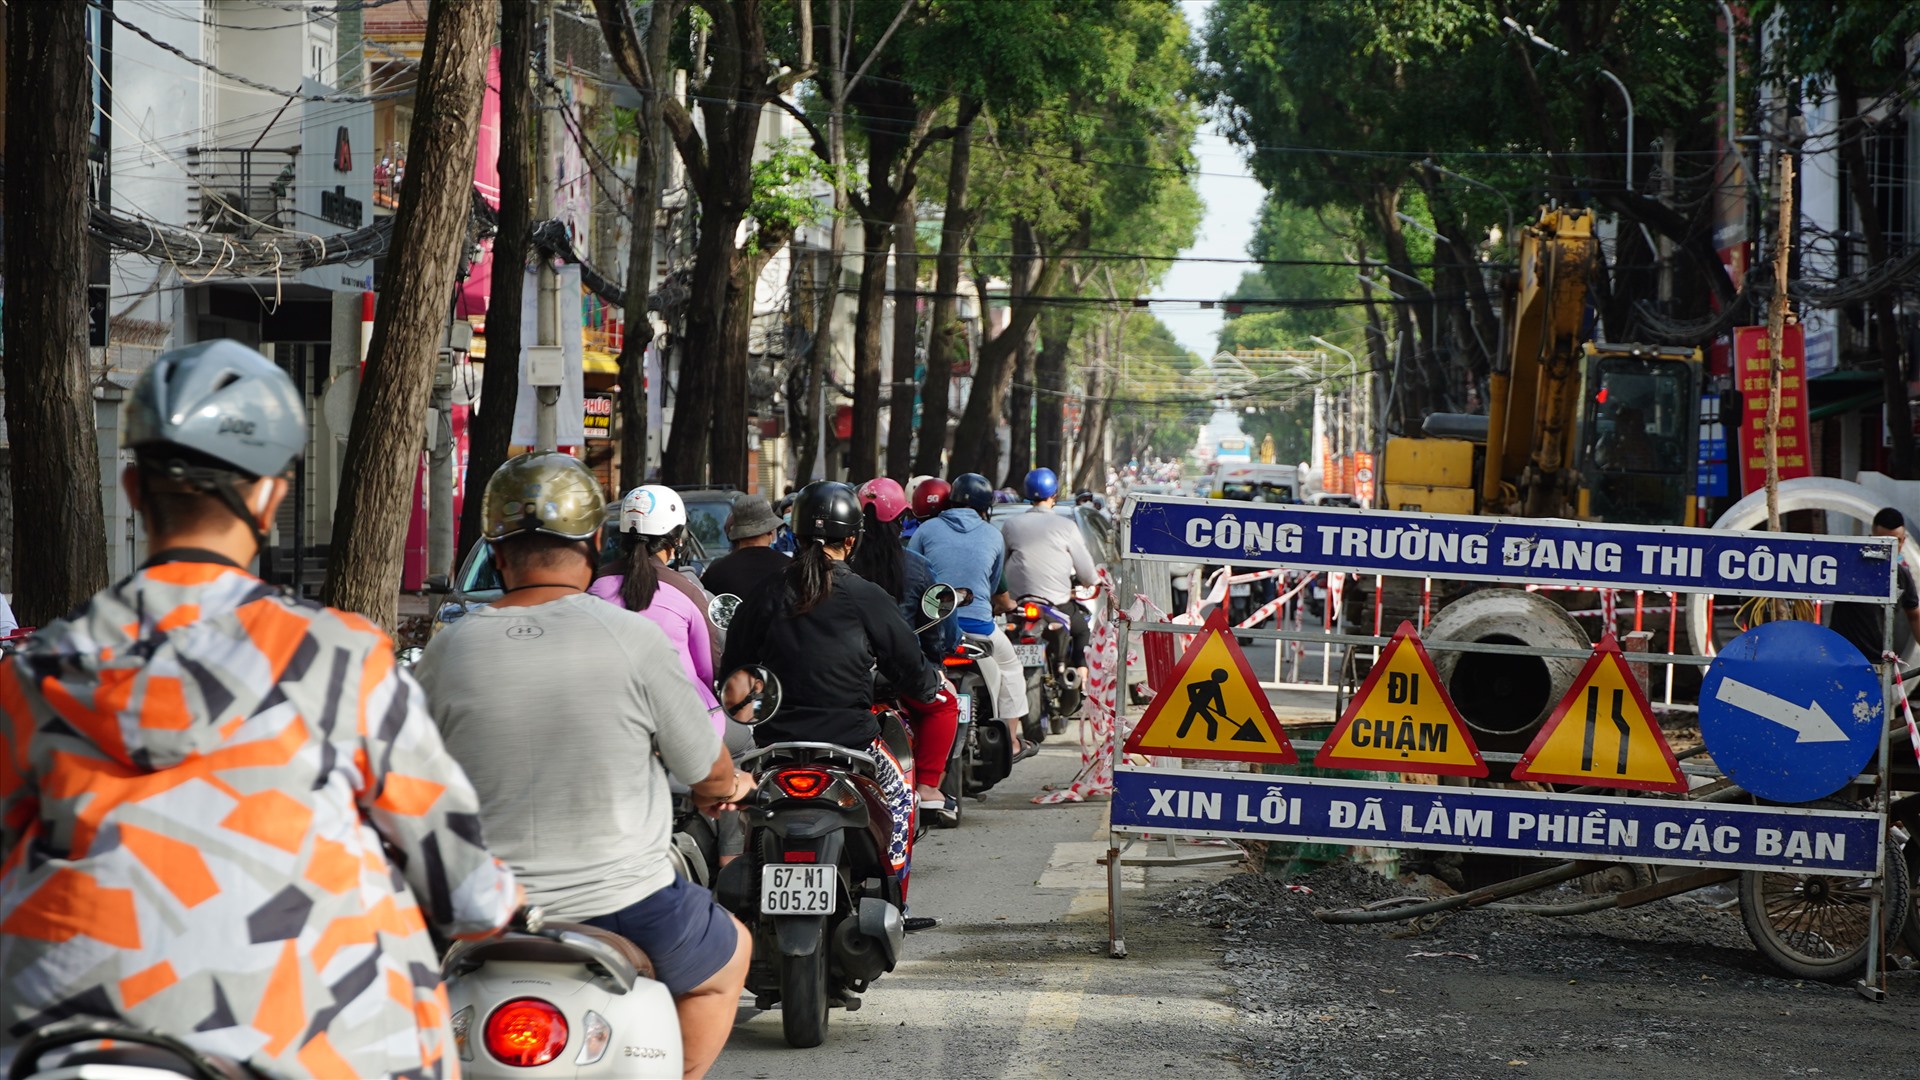 Tương tự, trên tuyến đường Nguyễn Trãi (quận Ninh Kiều), các phương tiện giao thông di chuyển chậm, ùn ứ, tắc nghẽn. Do đây là tuyến phố thời trang nên tình trạng này gây ảnh hưởng một phần đến việc kinh doanh, mua bán của các hộ dân tại khu vực.